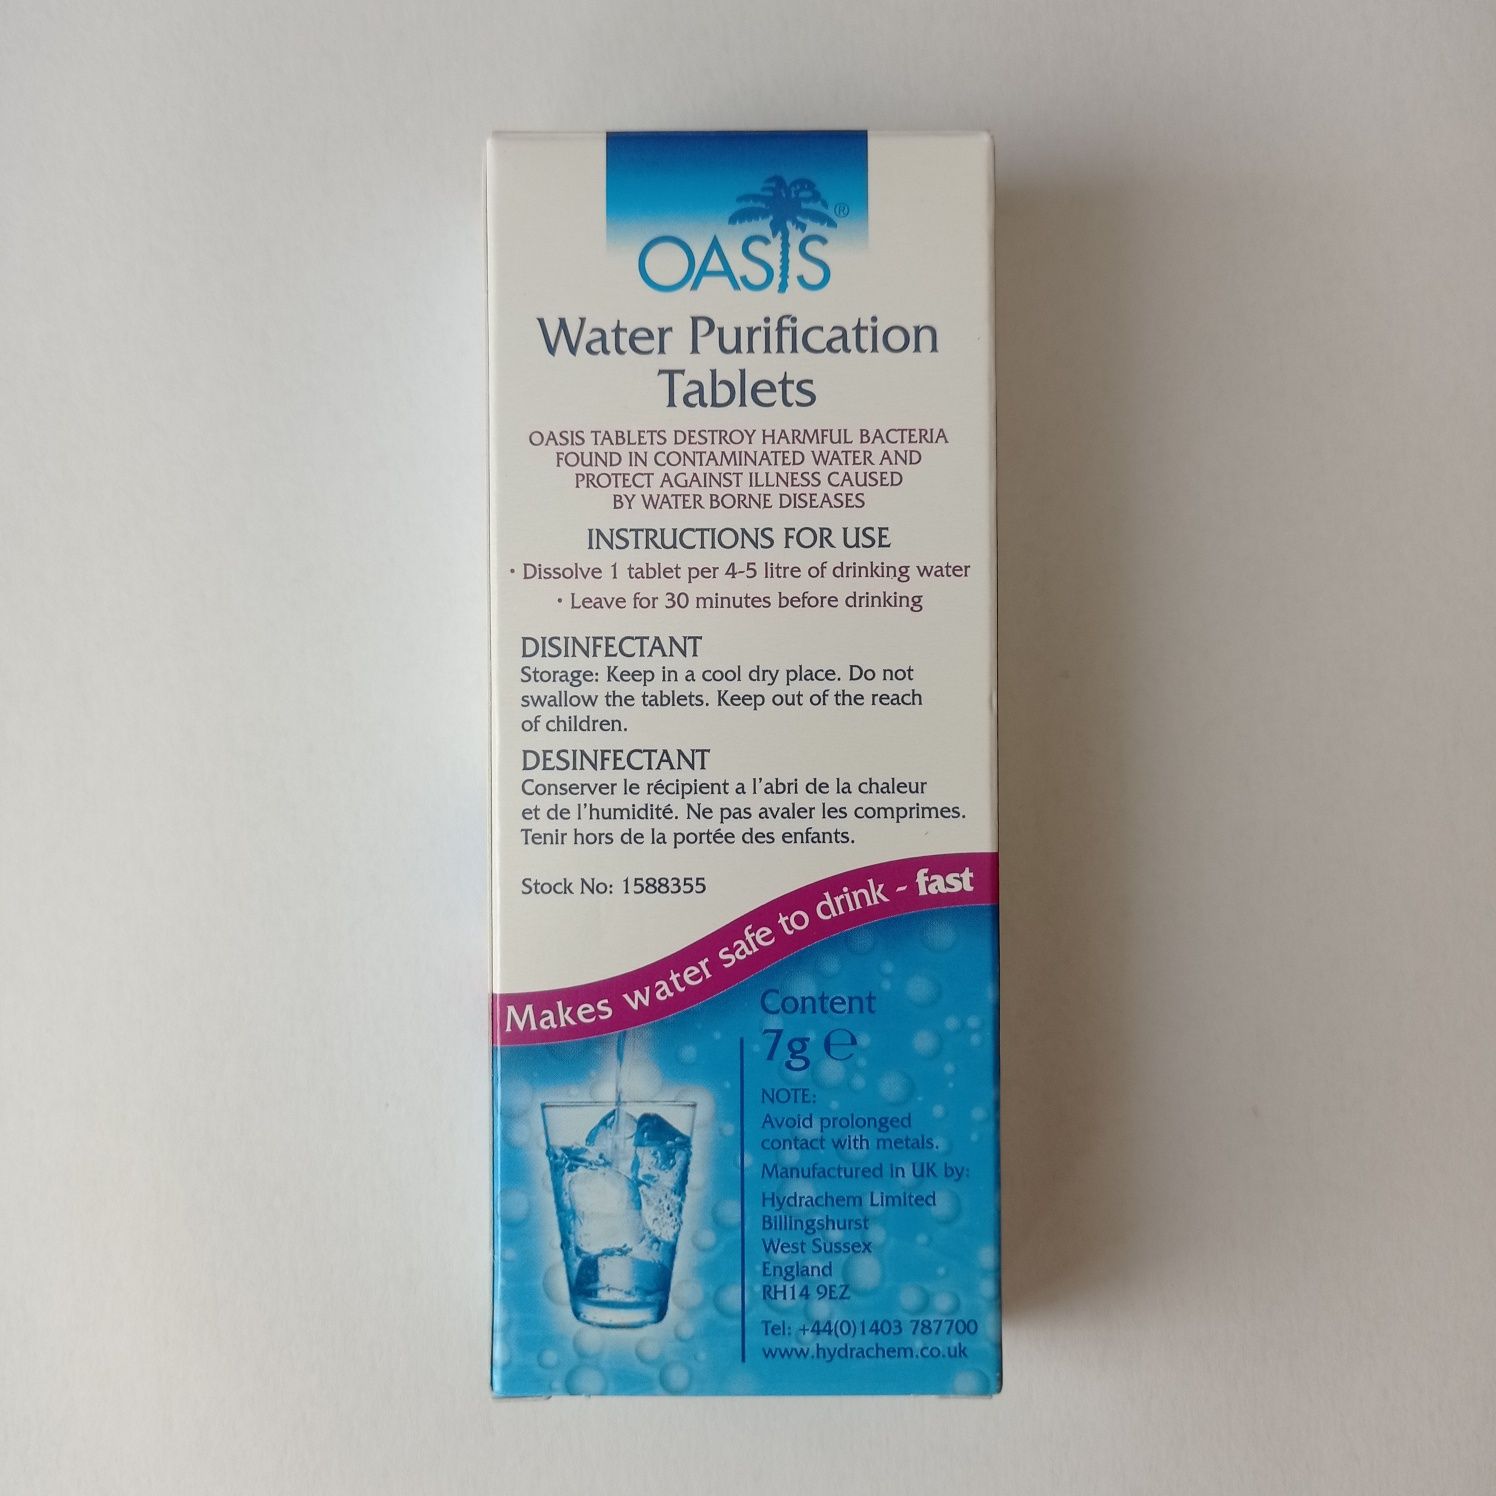 Oasis таблетки для очистки воды (1 таблетка = 4-5 литров воды)